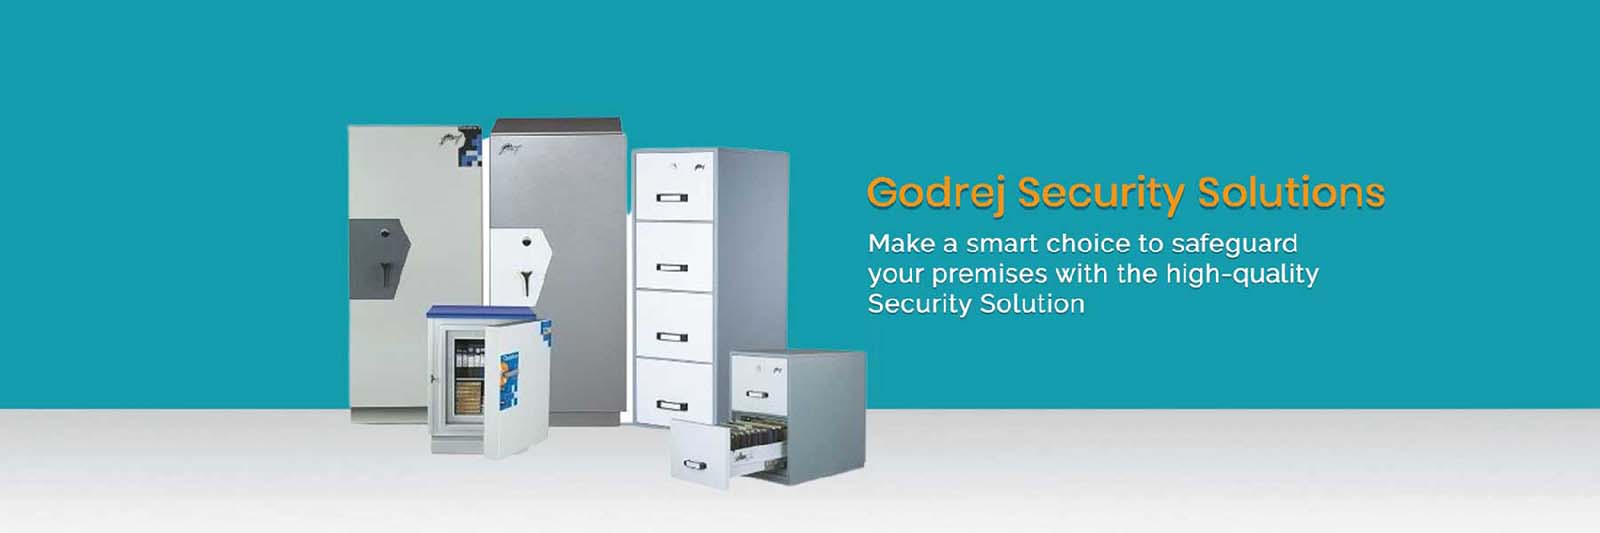 Godrej Security Solutions in Bhikaji Cama Place